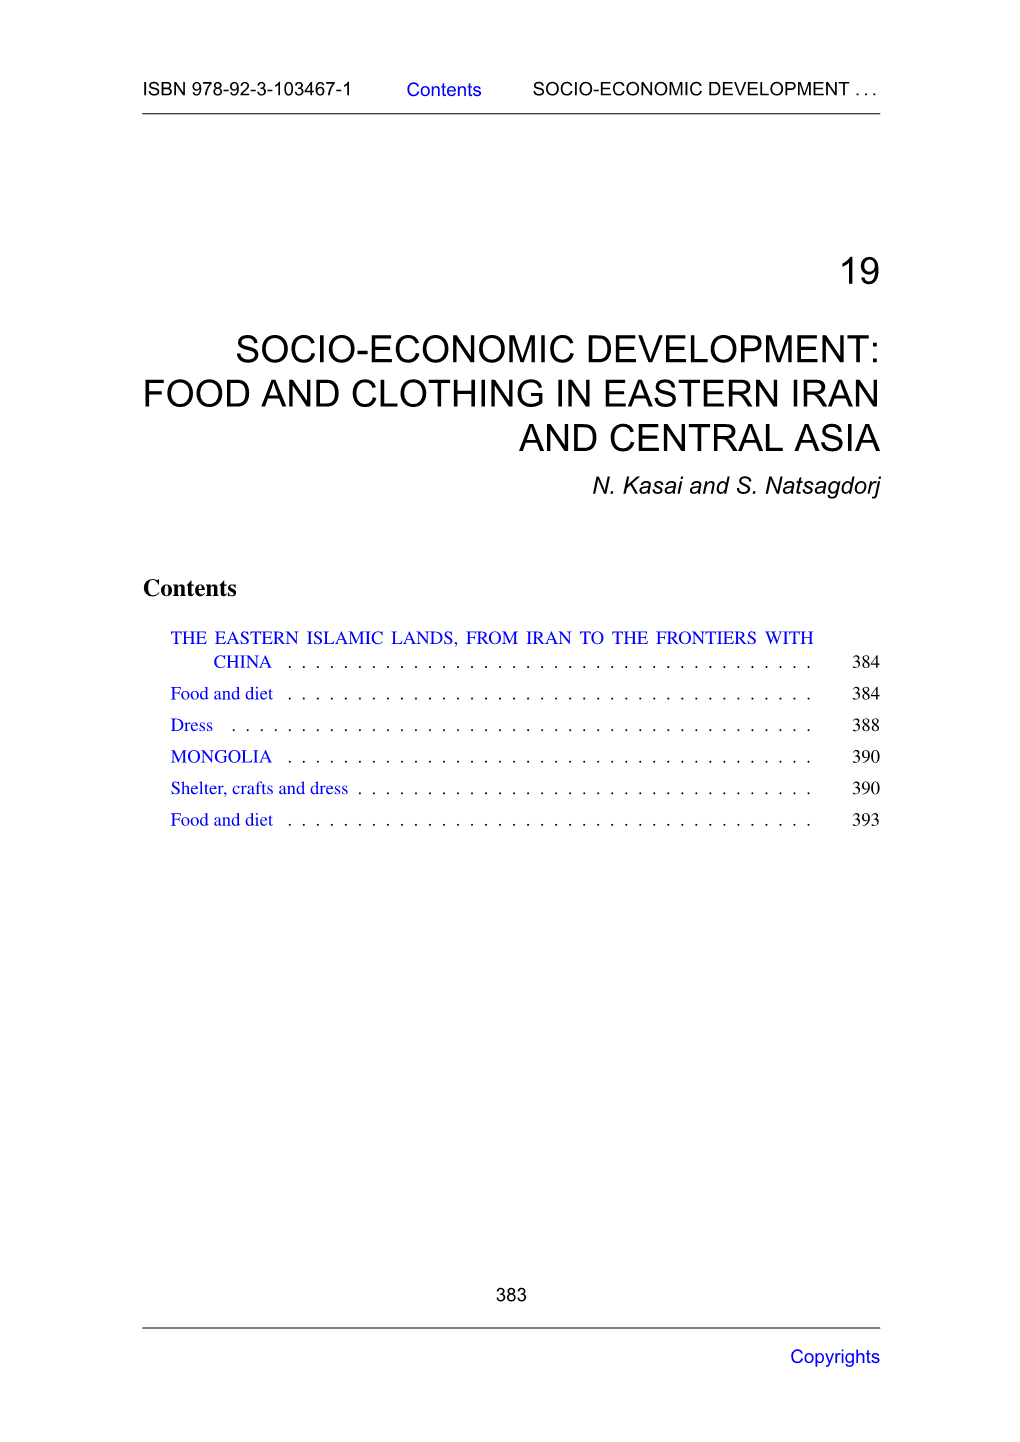 19 Socio-Economic Development: Food And